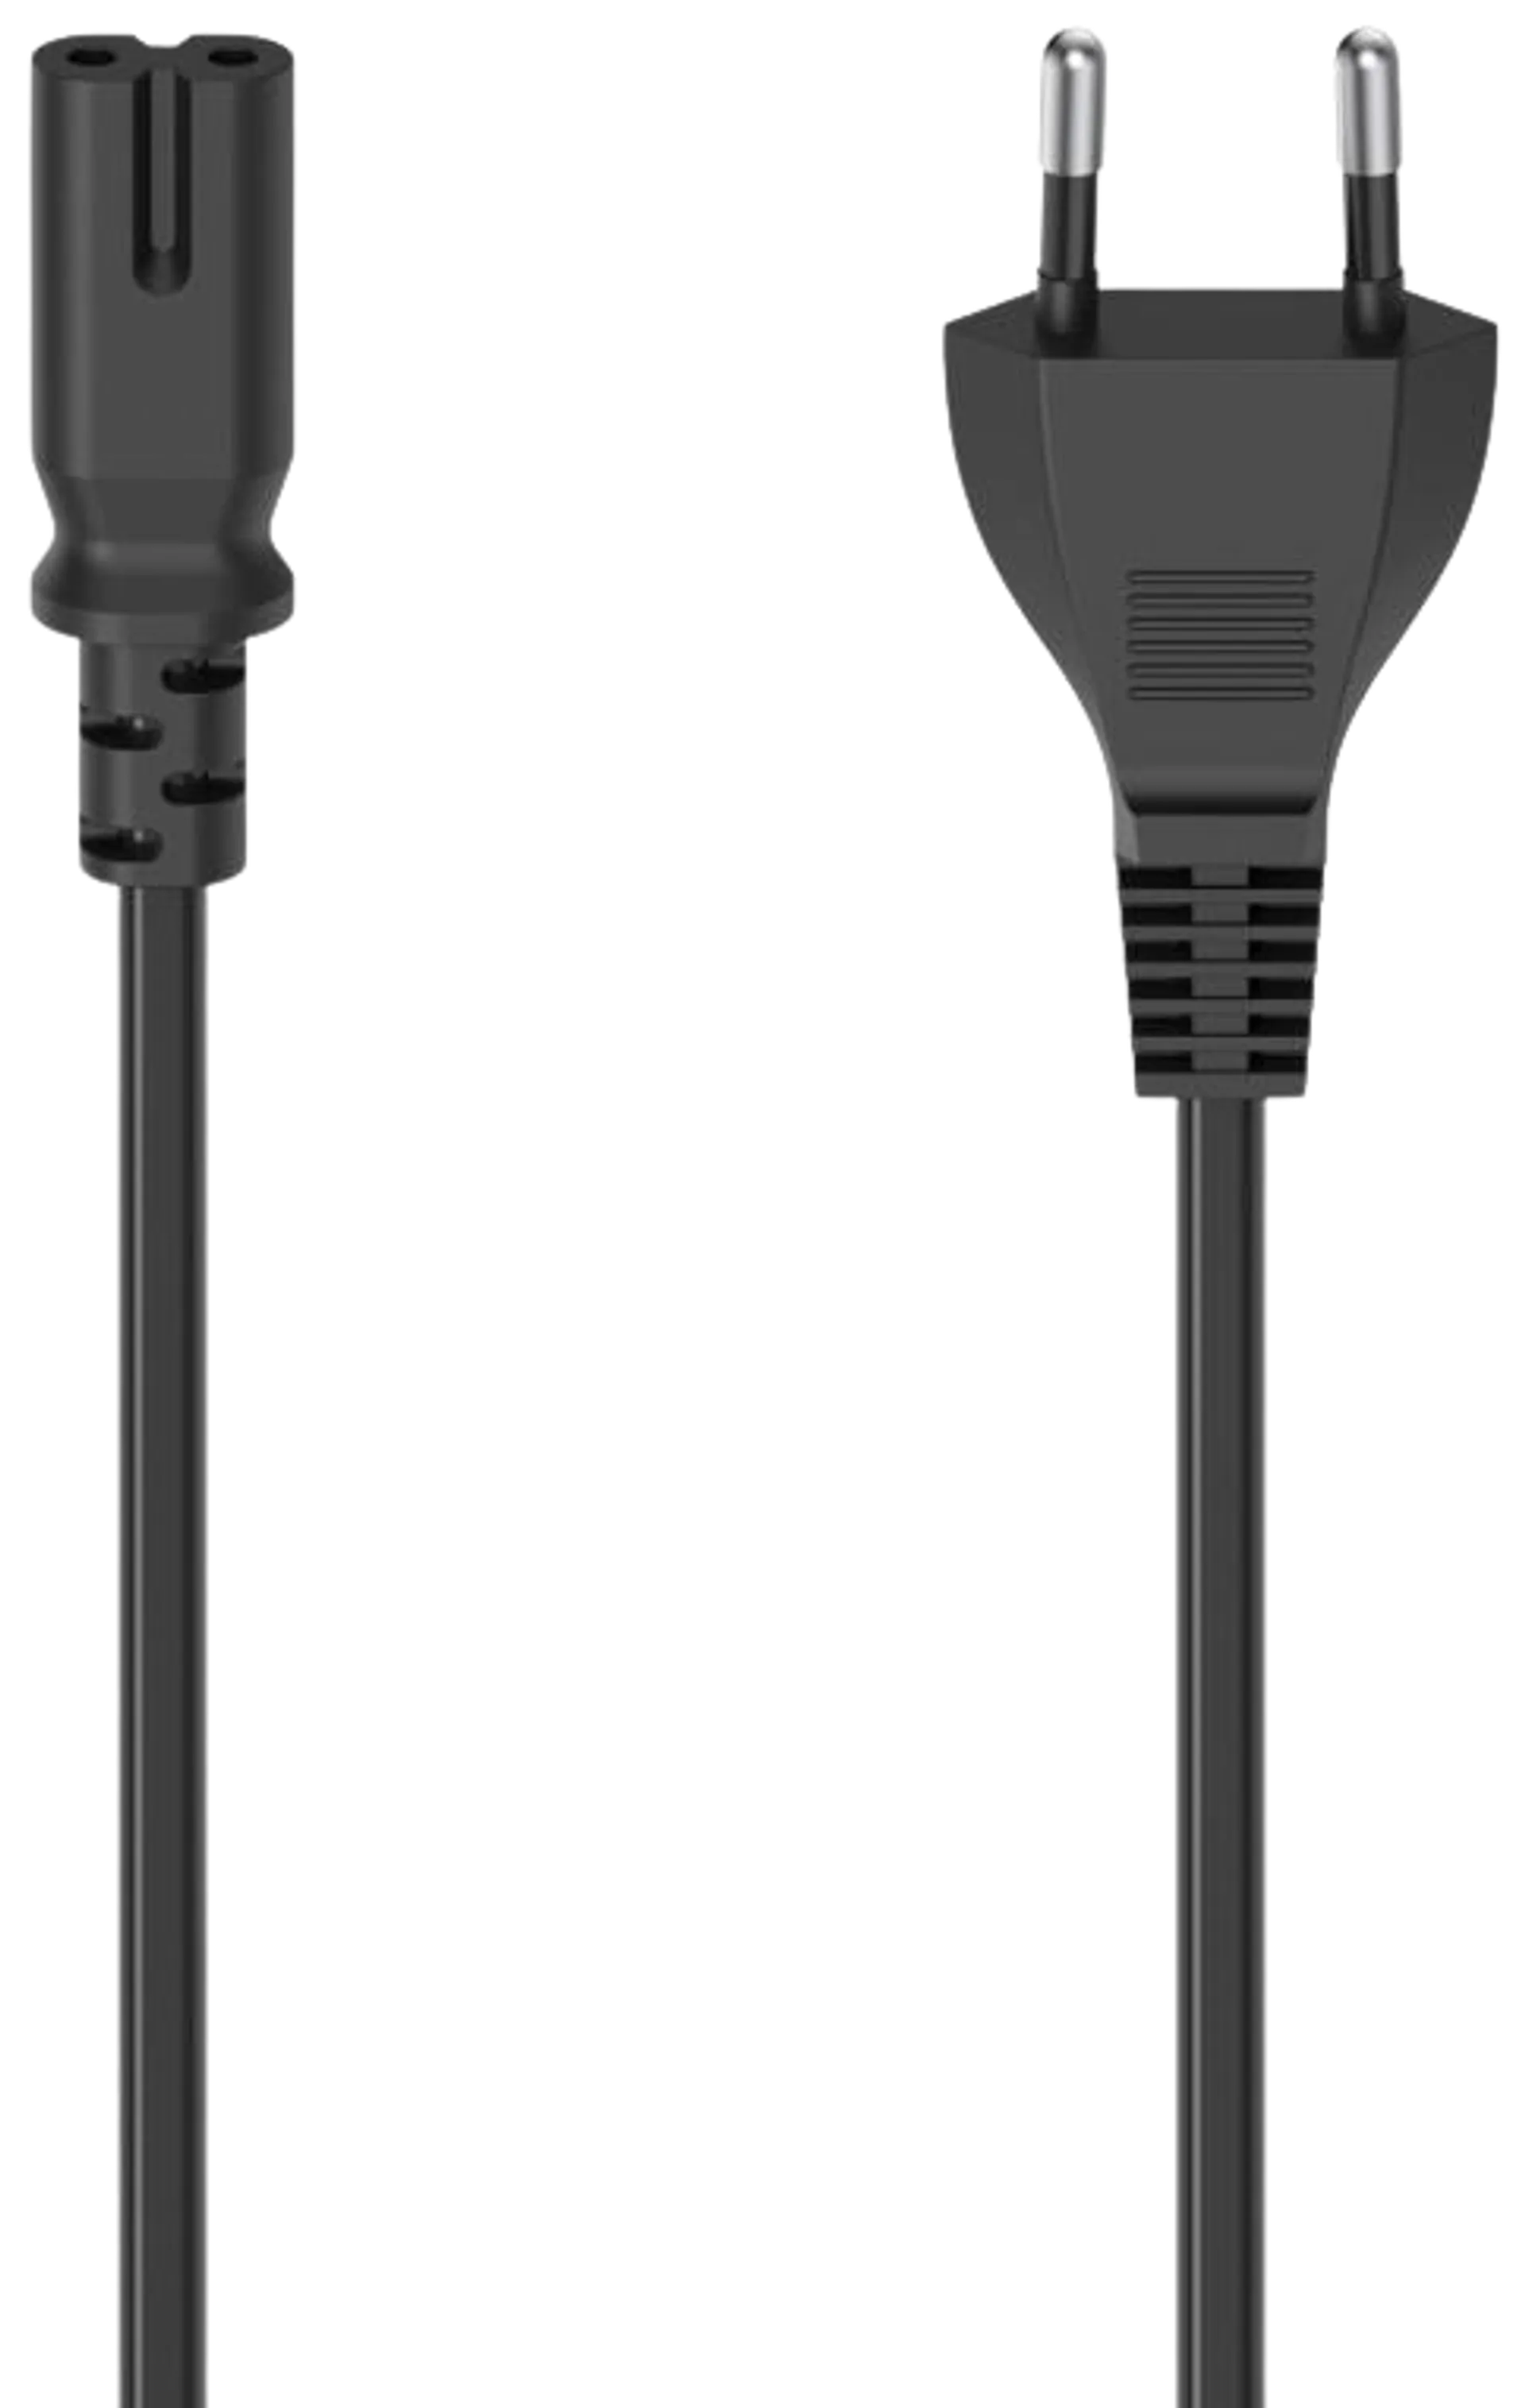 Hama Laitevirtajohto, CEE 7/16 (Type C/Euro plug) - 2-pin plug C7, 1,5 m, musta